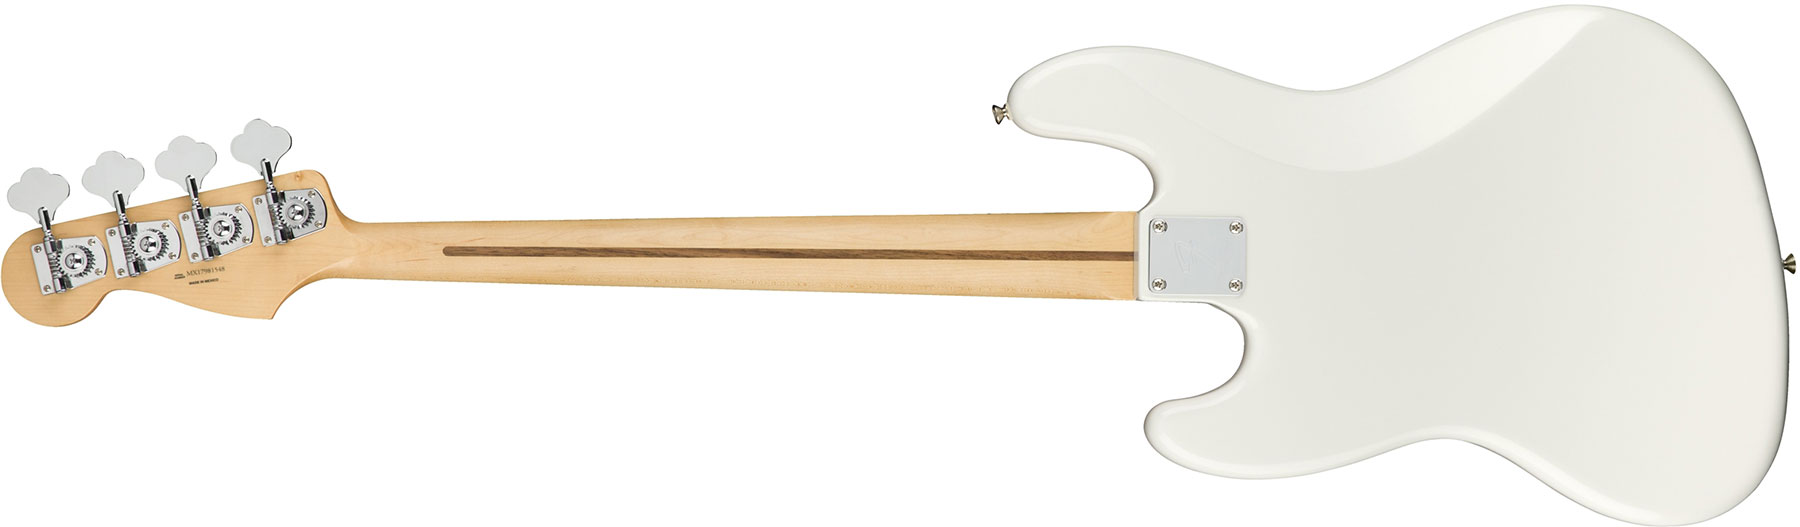 Fender Jazz Bass Player Mex Mn - Polar White - Solid body elektrische bas - Variation 1